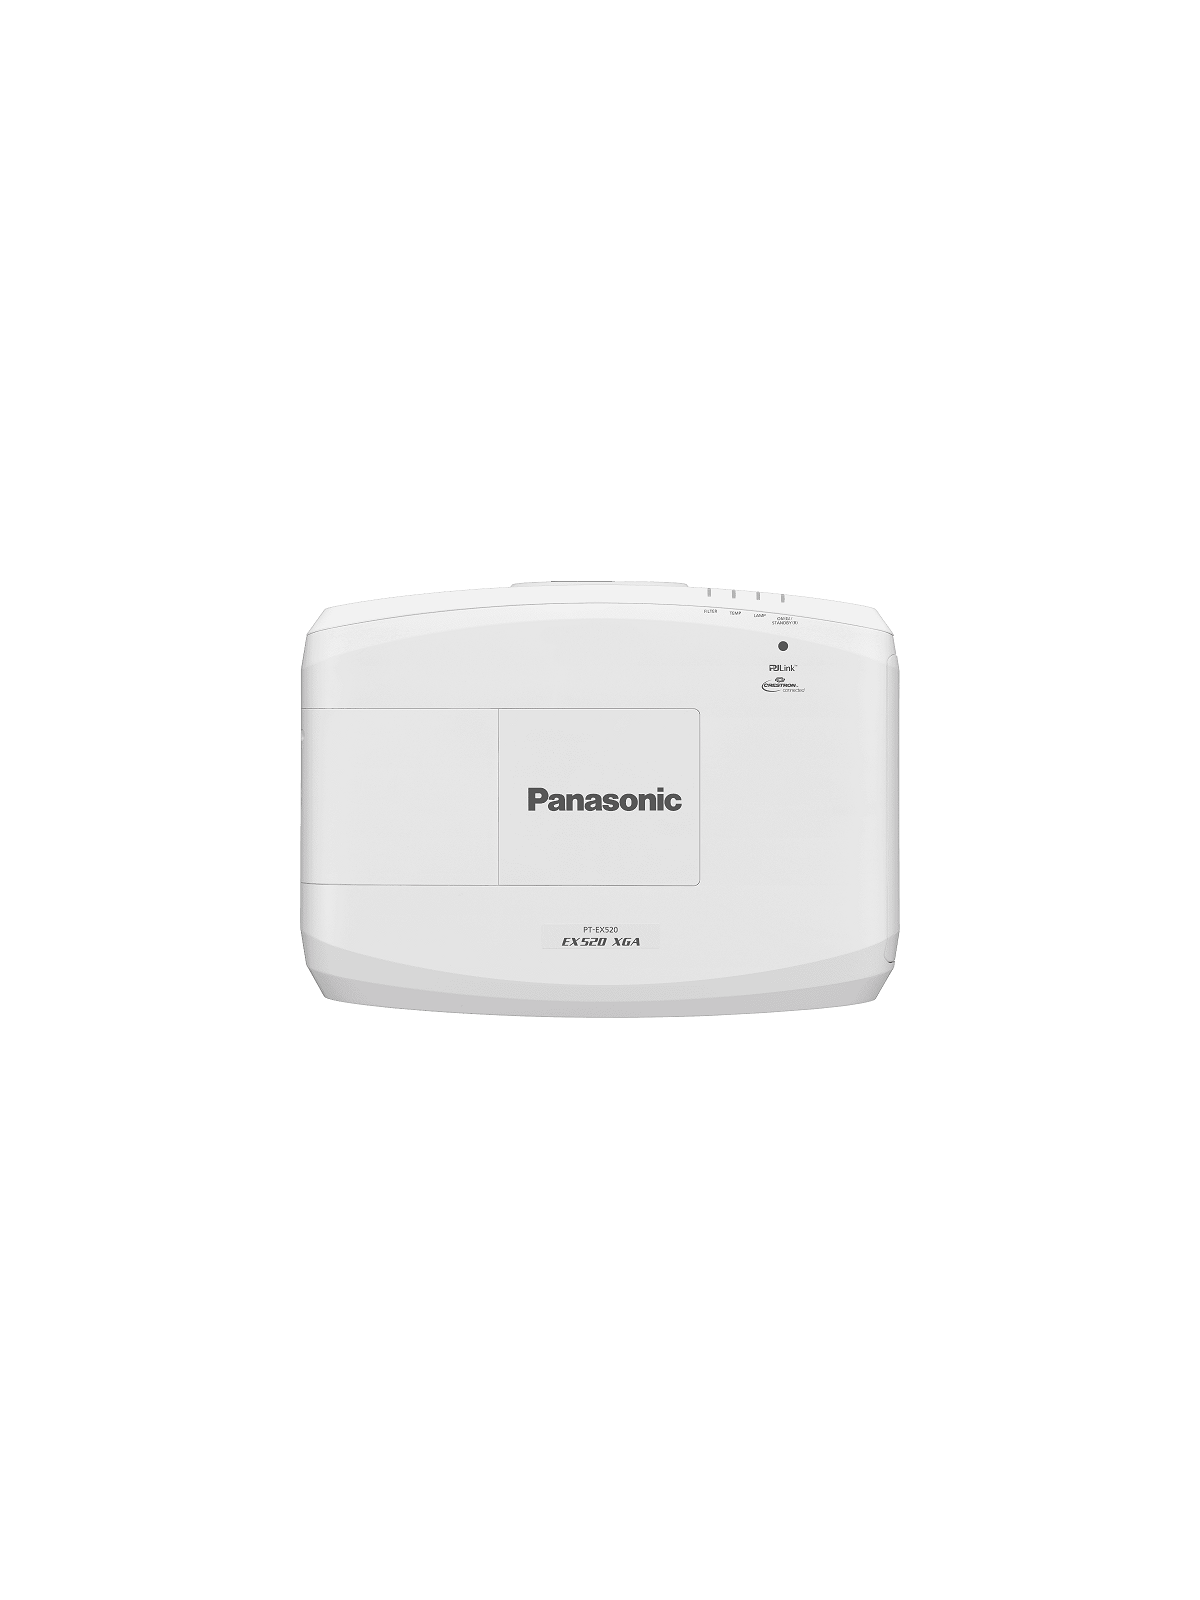 Panasonic - PT-EX520LE 5300 Lm